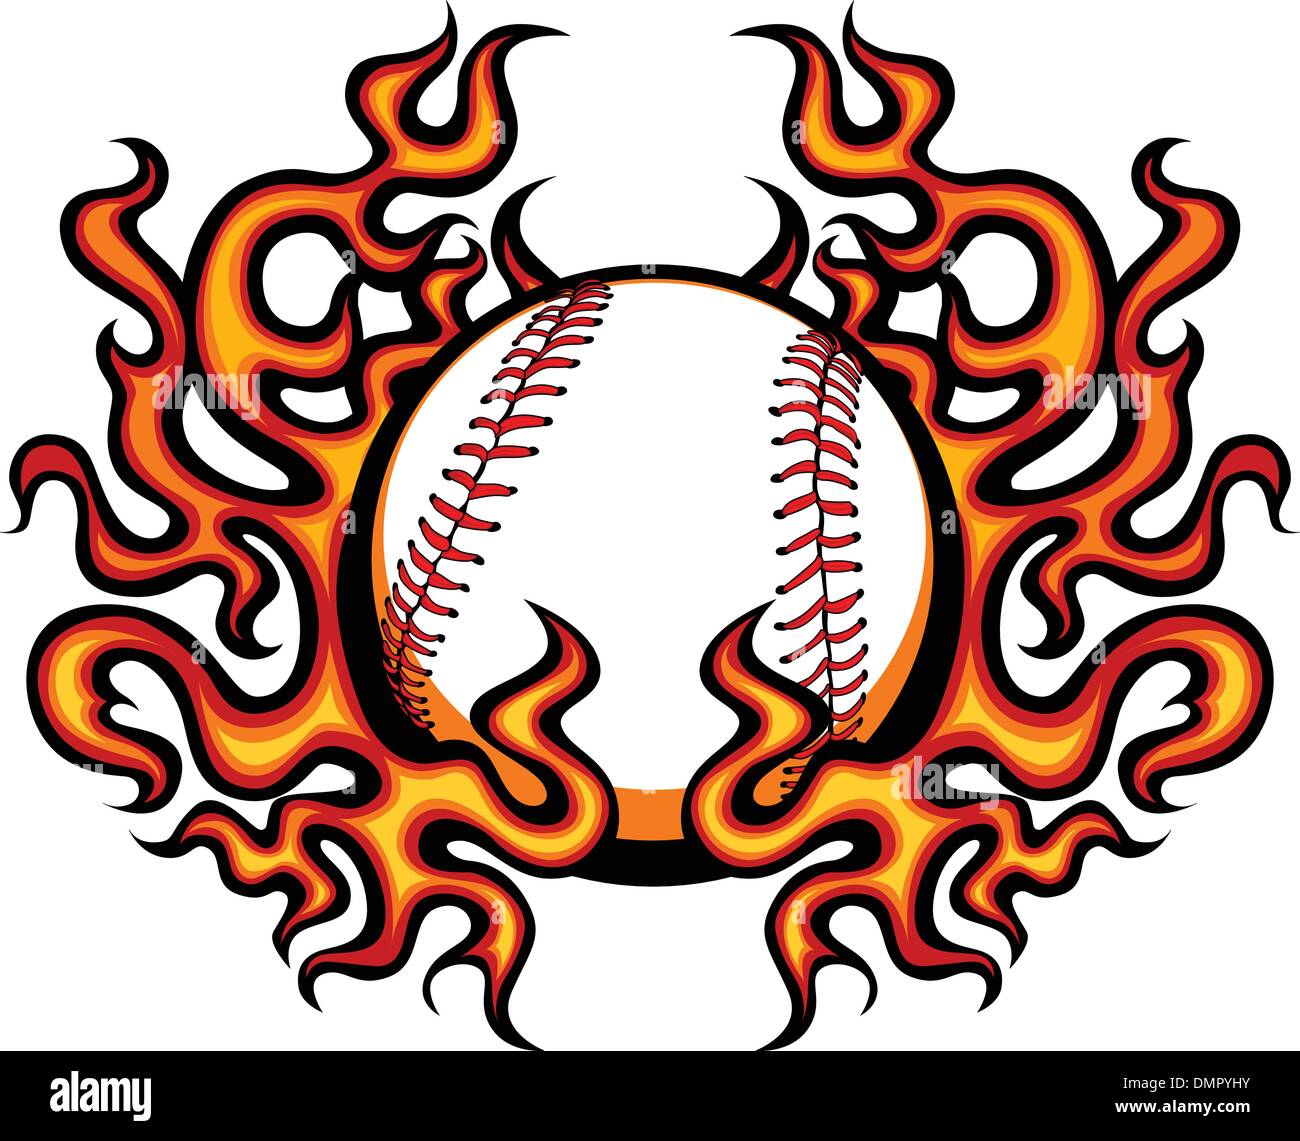 Modello di baseball con fiamme immagine vettoriale Illustrazione Vettoriale